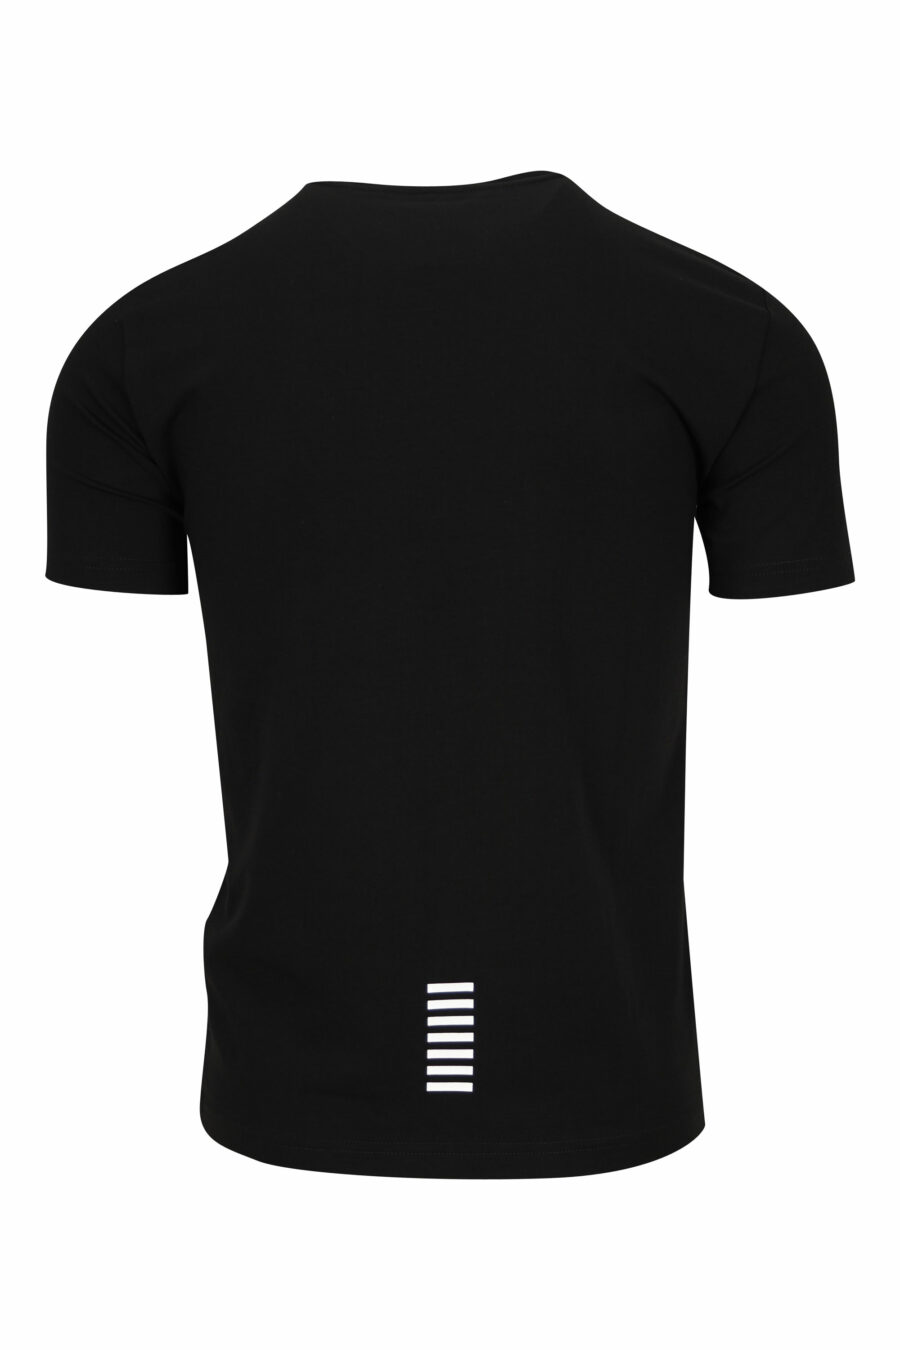 Camiseta negra con minilogo "lux identity" de goma - 8055187168106 1